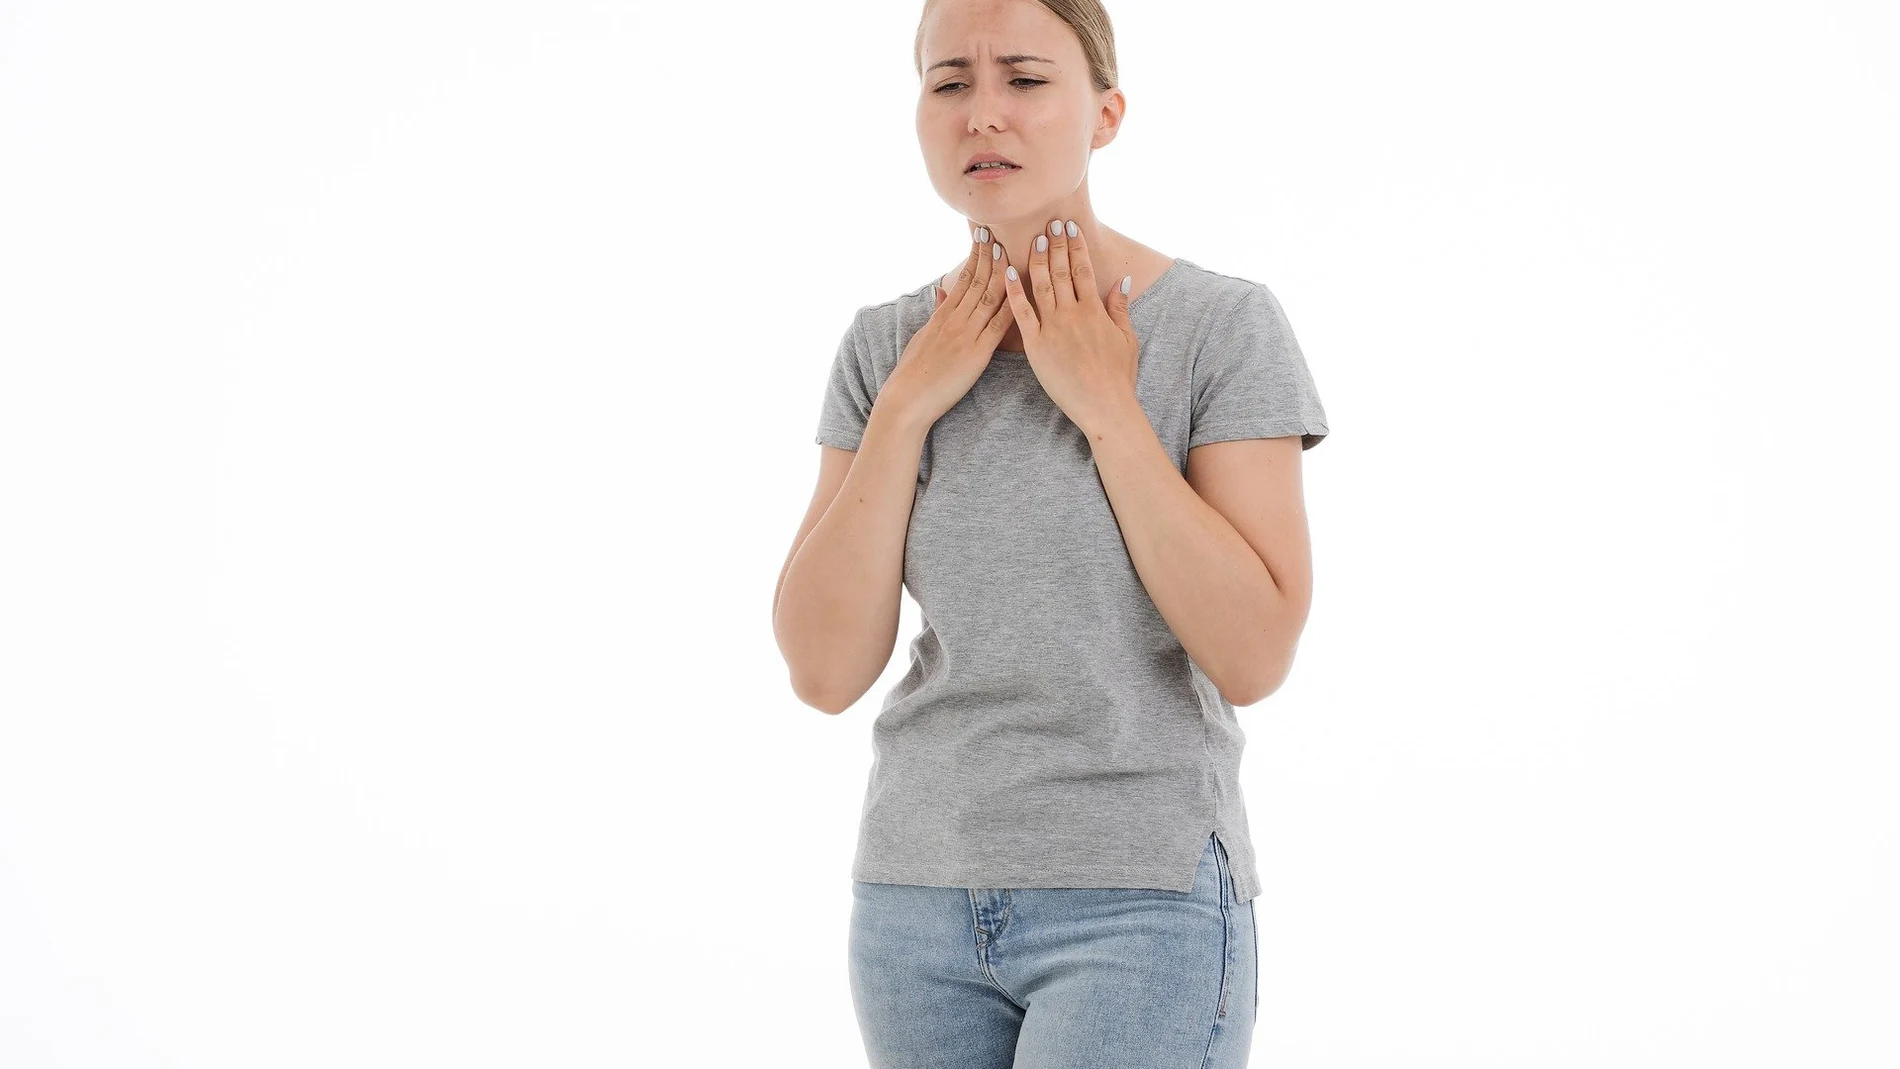 Uno de los síntomas de la mononucleosis es el dolor intenso de garganta.